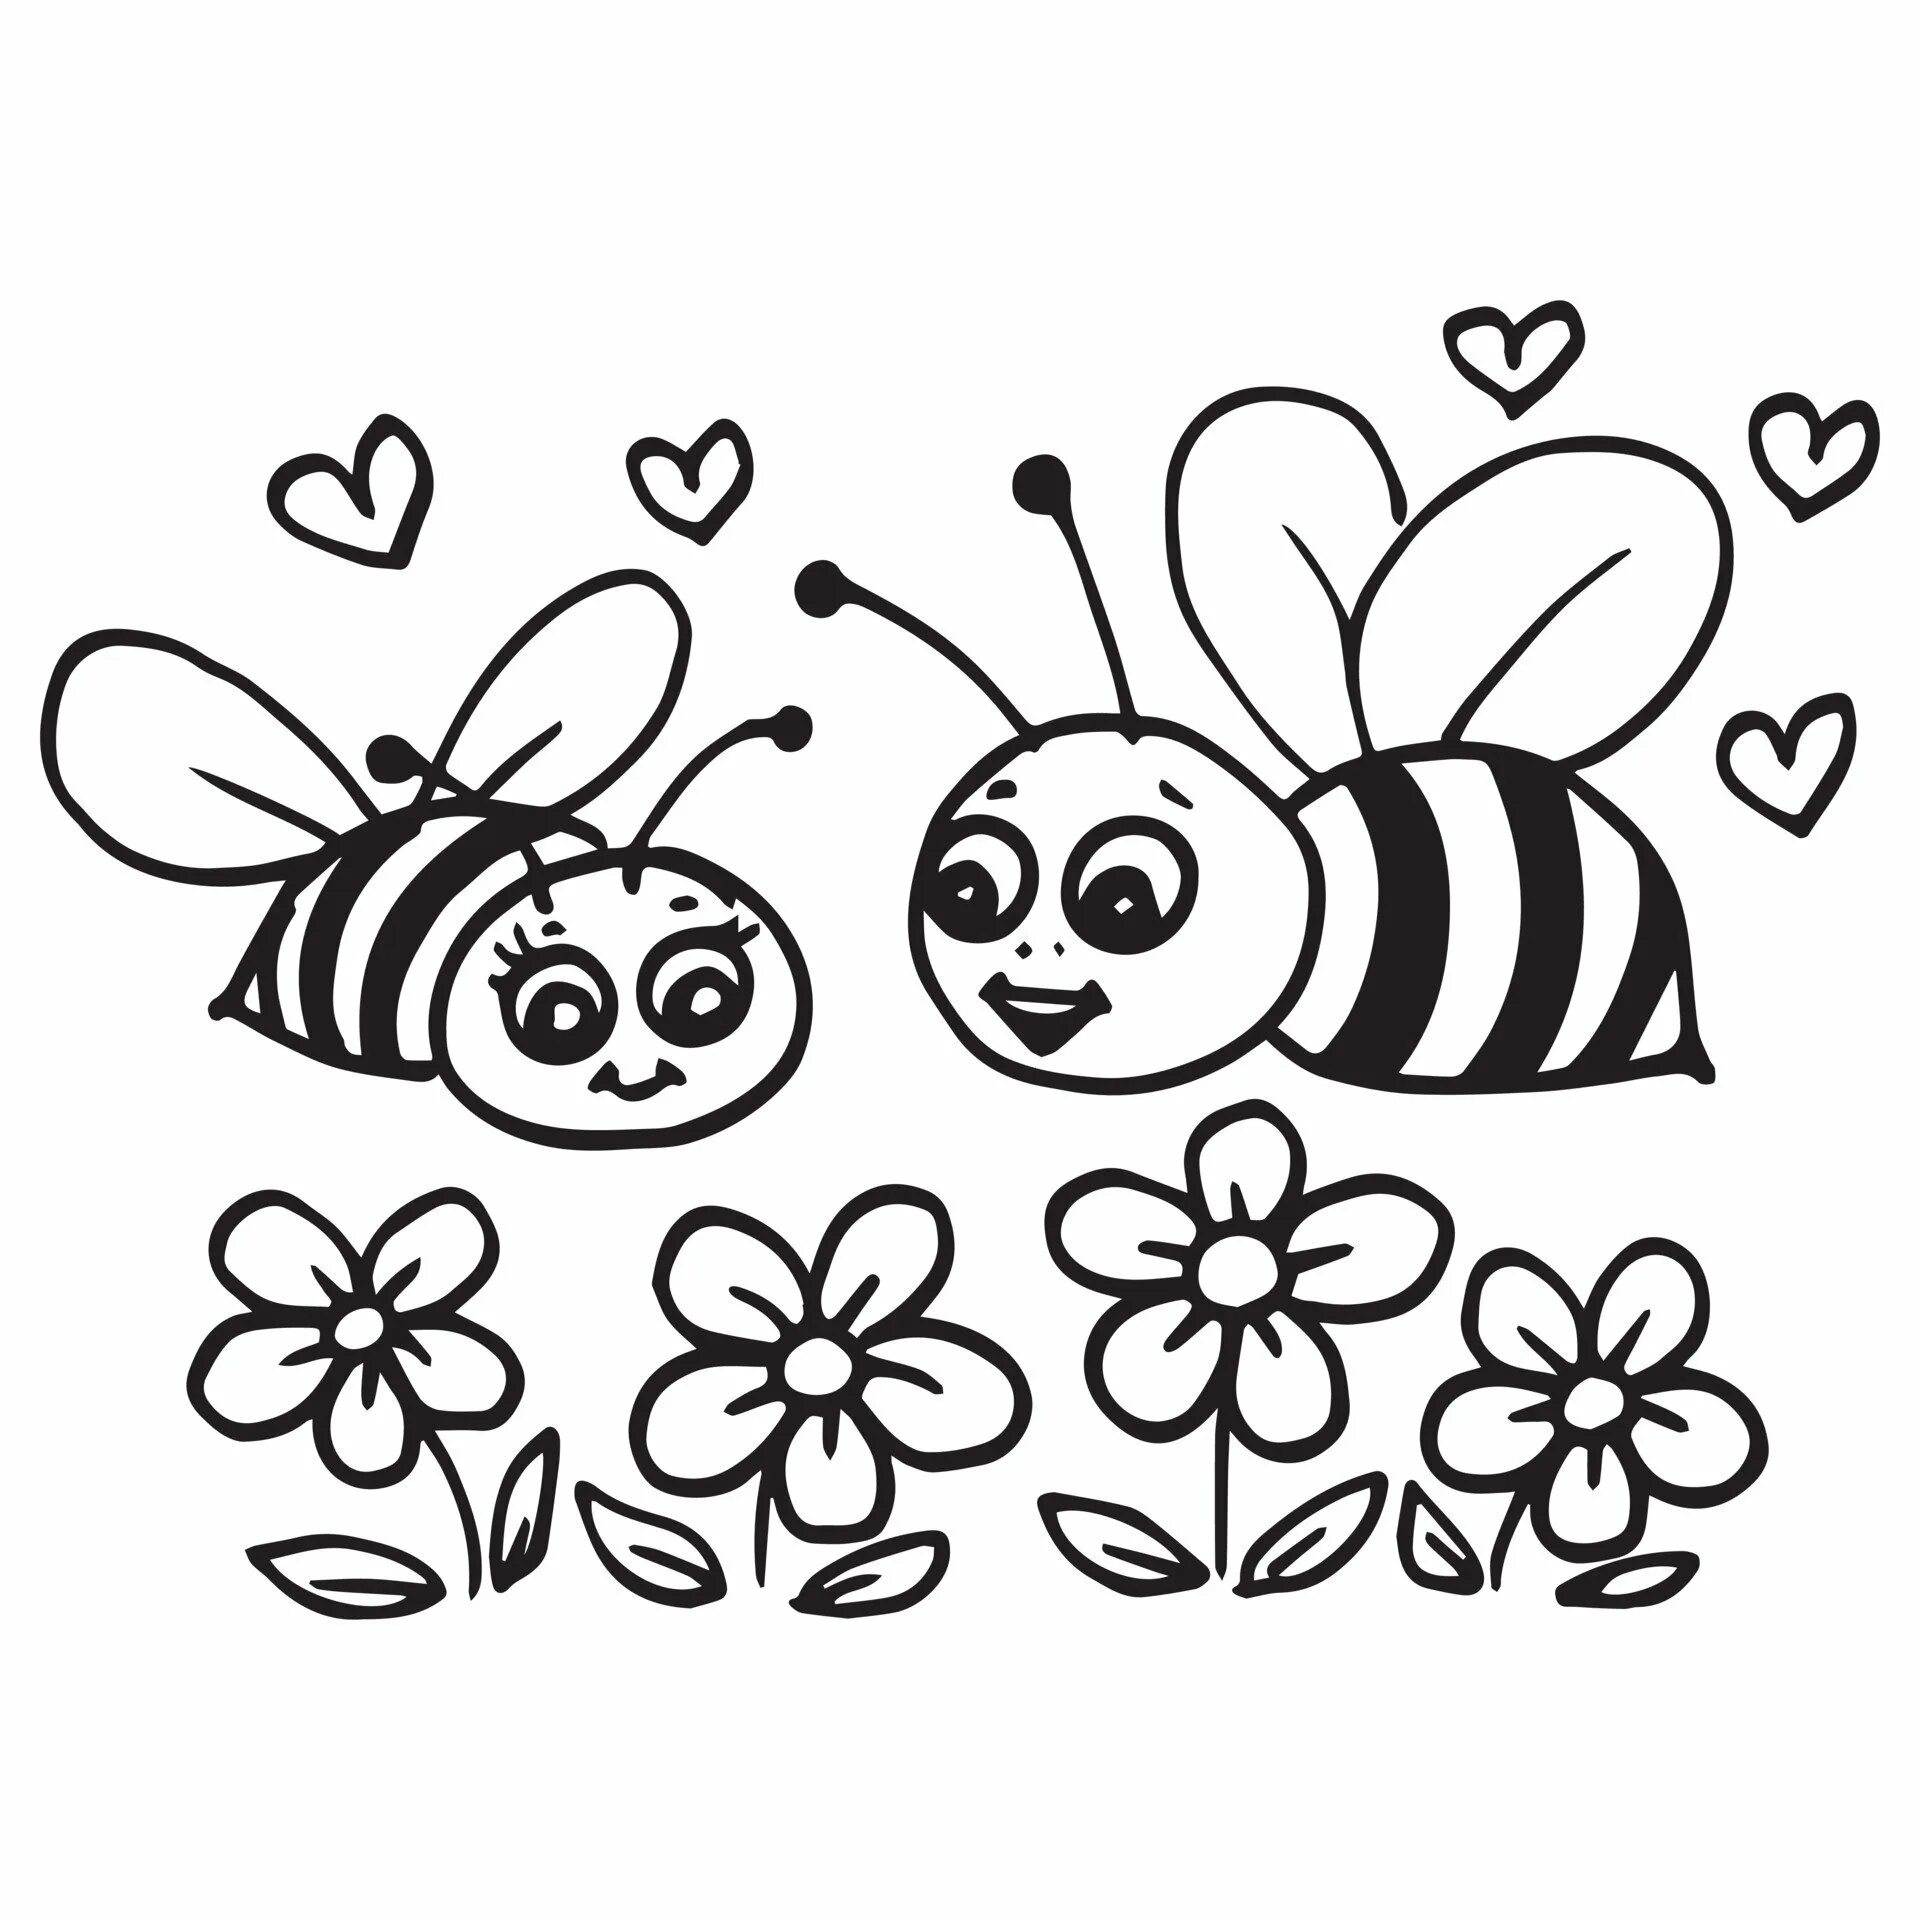 Раскраска пчёлка для детей. Пчела раскраска для малышей. Пчела раскраска для детей. Пчелка раскраска для малышей. Раскраска пчела для детей